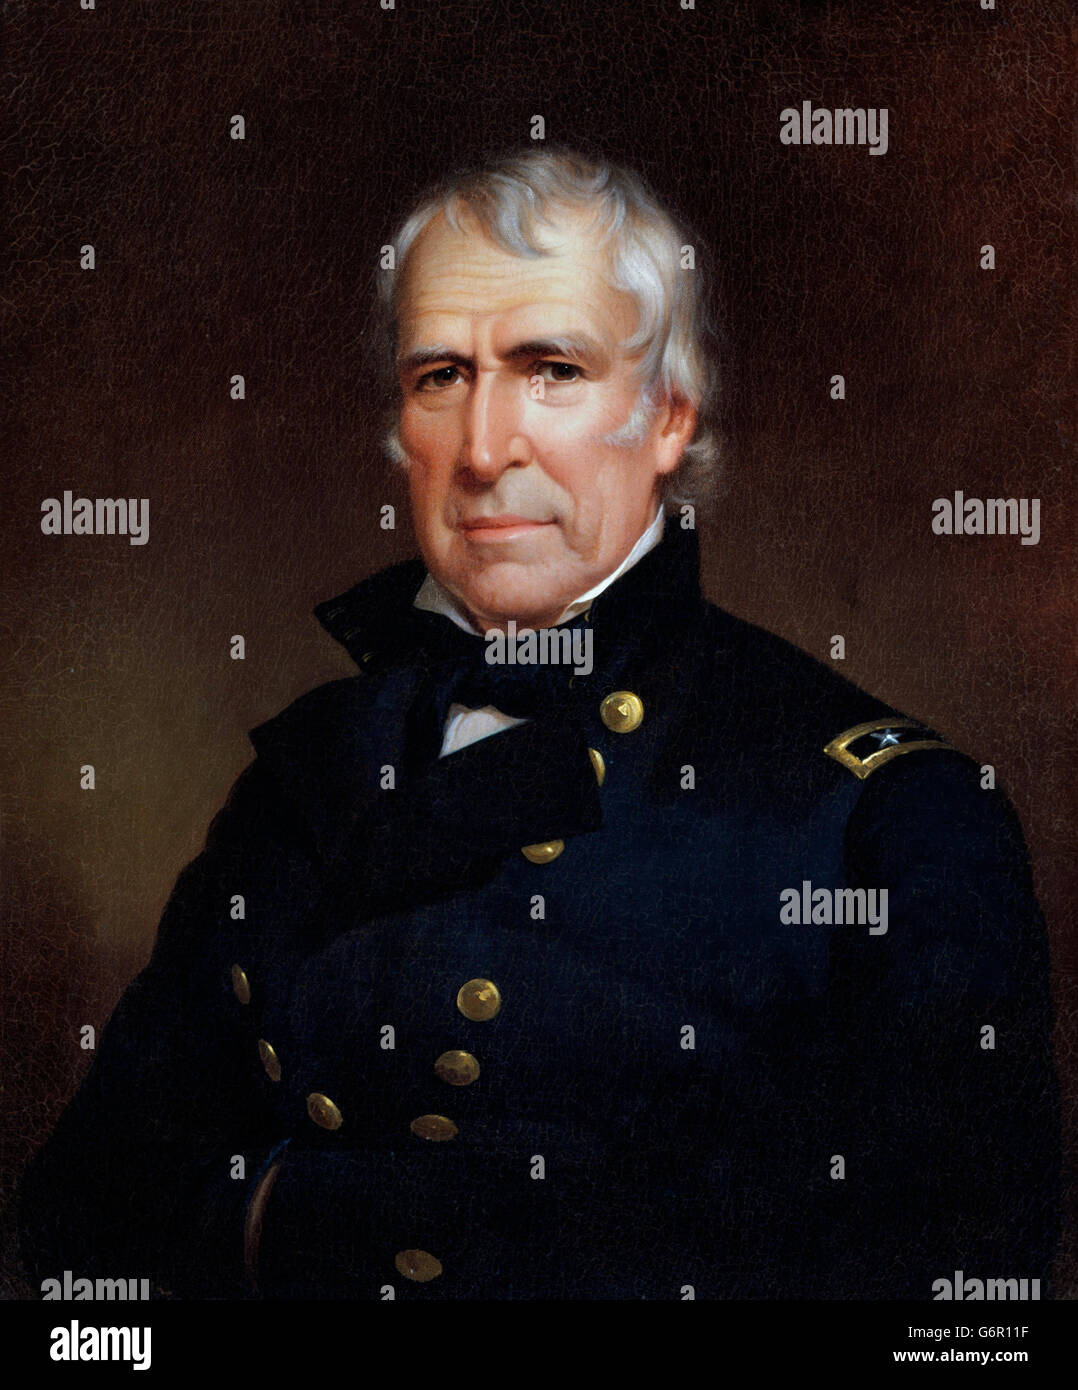 Zachary Taylor. Porträt von der 12. US-Präsident Zachary Taylor (1784-1850) von James Reid Lambdin, 1848 Stockfoto